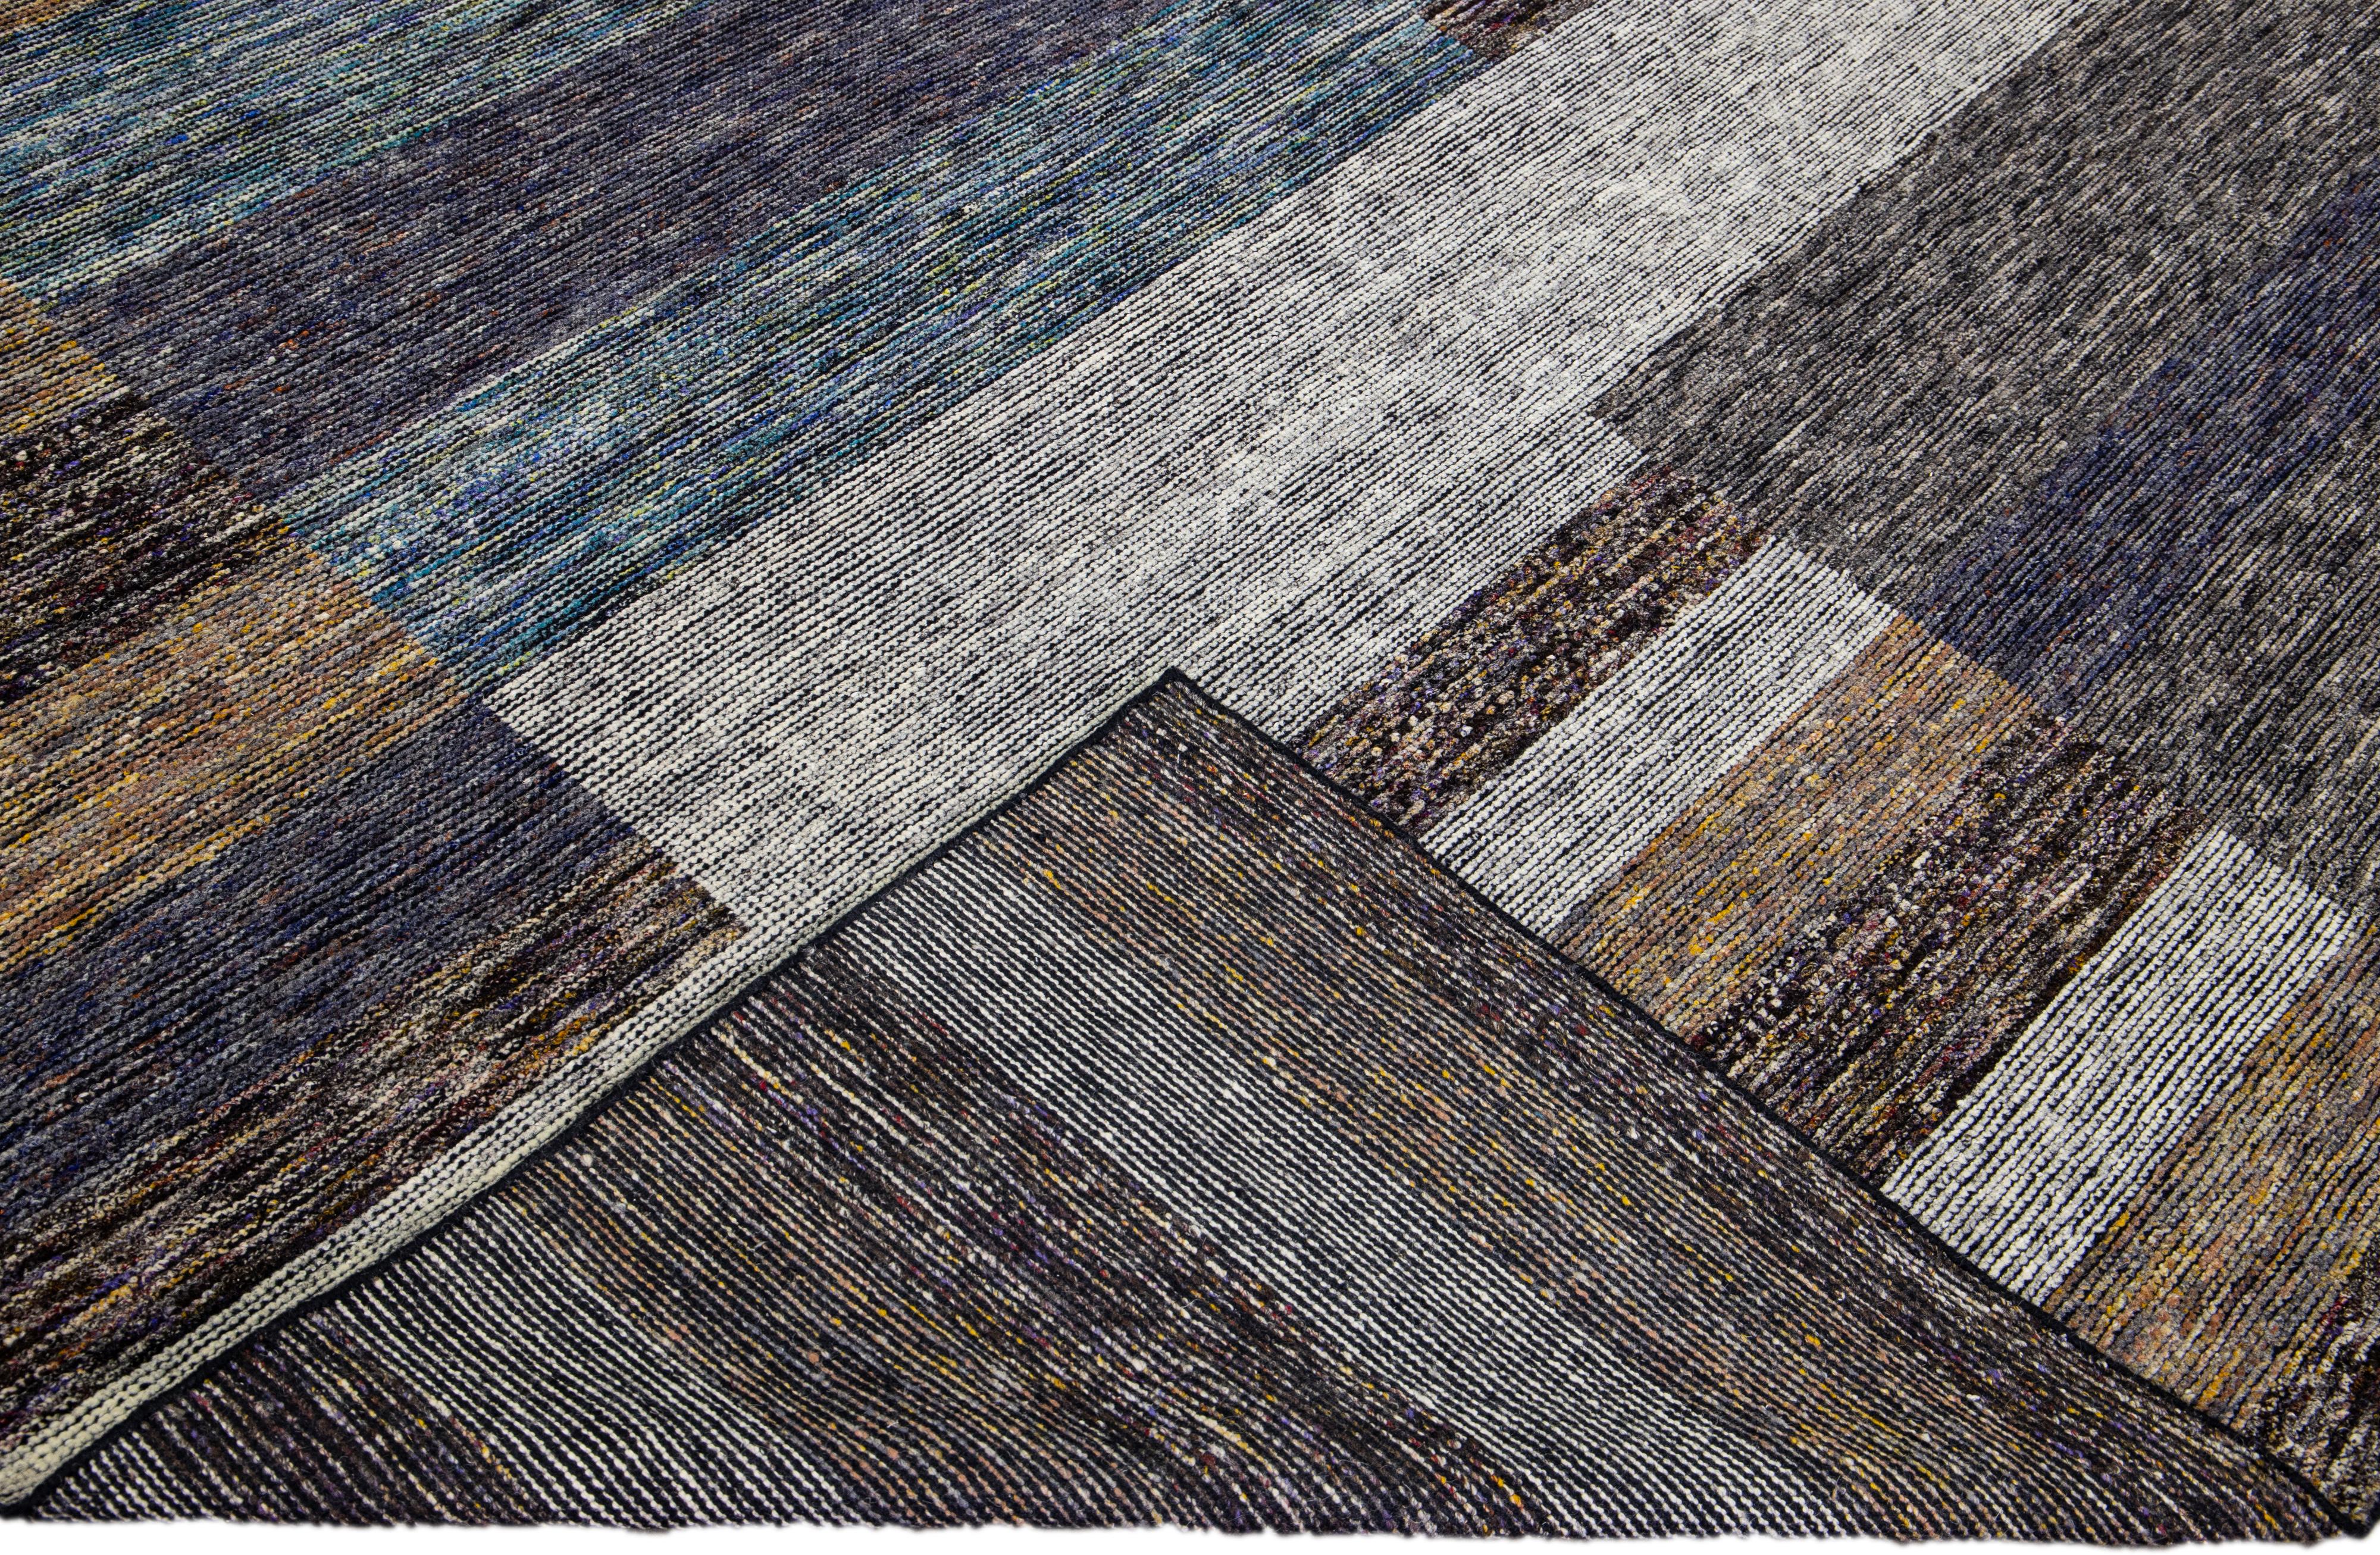 Wunderschöner moderner handgeknüpfter Wollteppich aus der Safi Collection von Apadana mit einem erdigen Farbfeld. Dieser moderne Teppich hat blaue, graue und braune Akzente ein wunderschönes Layout abstraktes Design.

Dieser Teppich misst: 10'2